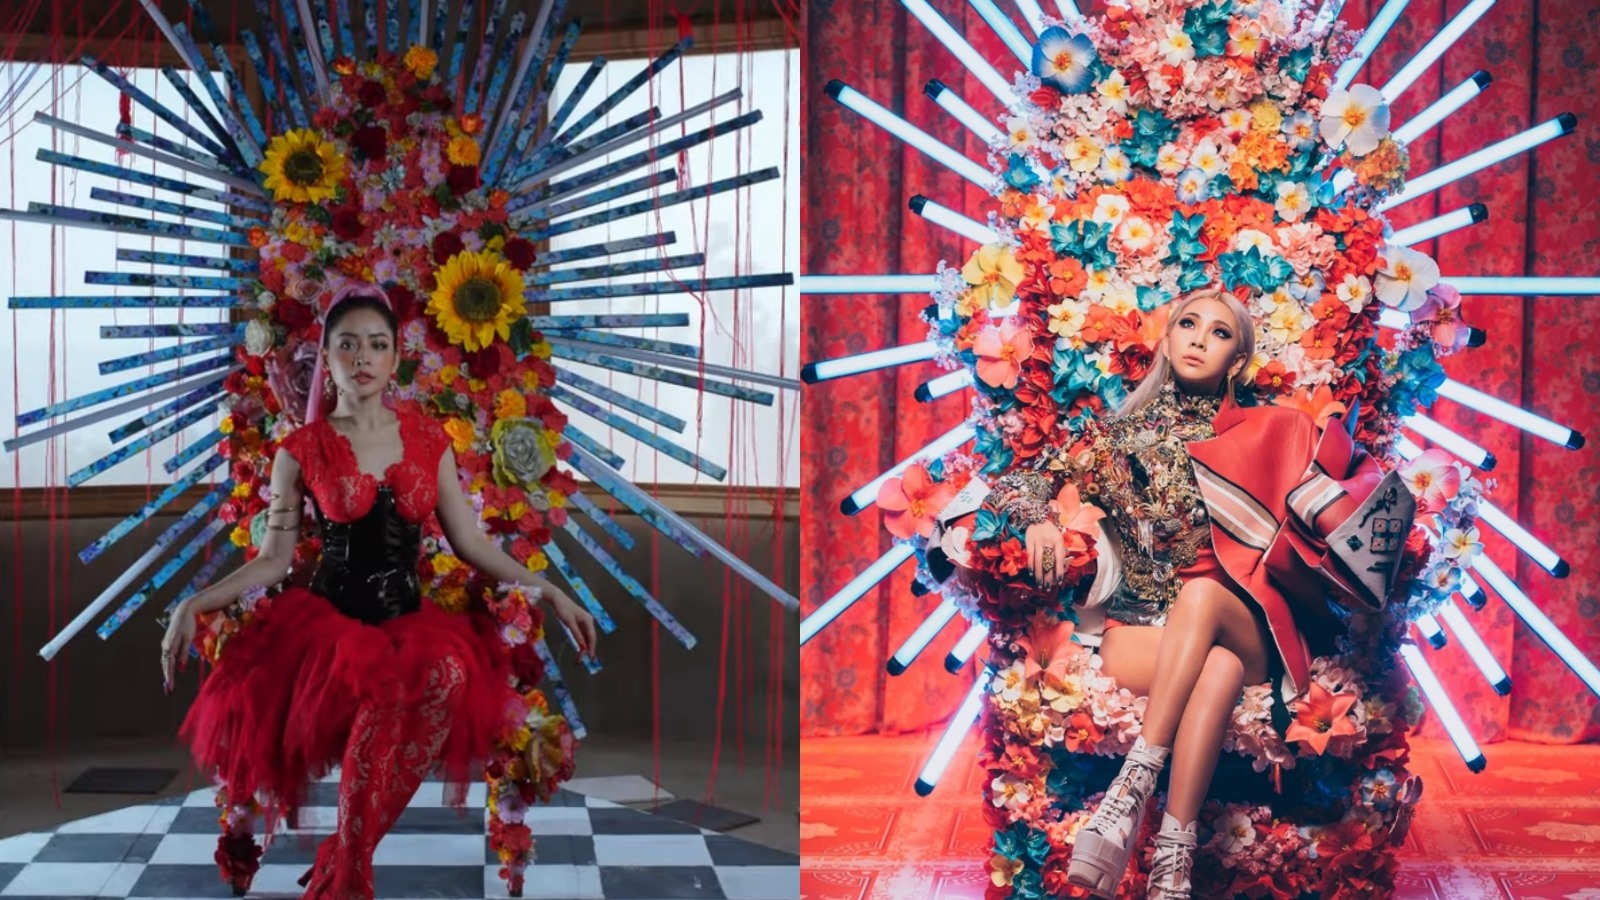 Chi Pu trong MV nhạc phim “Thiên thần hộ mệnh” (2021) và CL trong MV “Hello Bitches” (2015) cùng sử dụng chiếc ghế hoa có những ánh hào quang tỏa xung quanh. Ảnh: CMH.